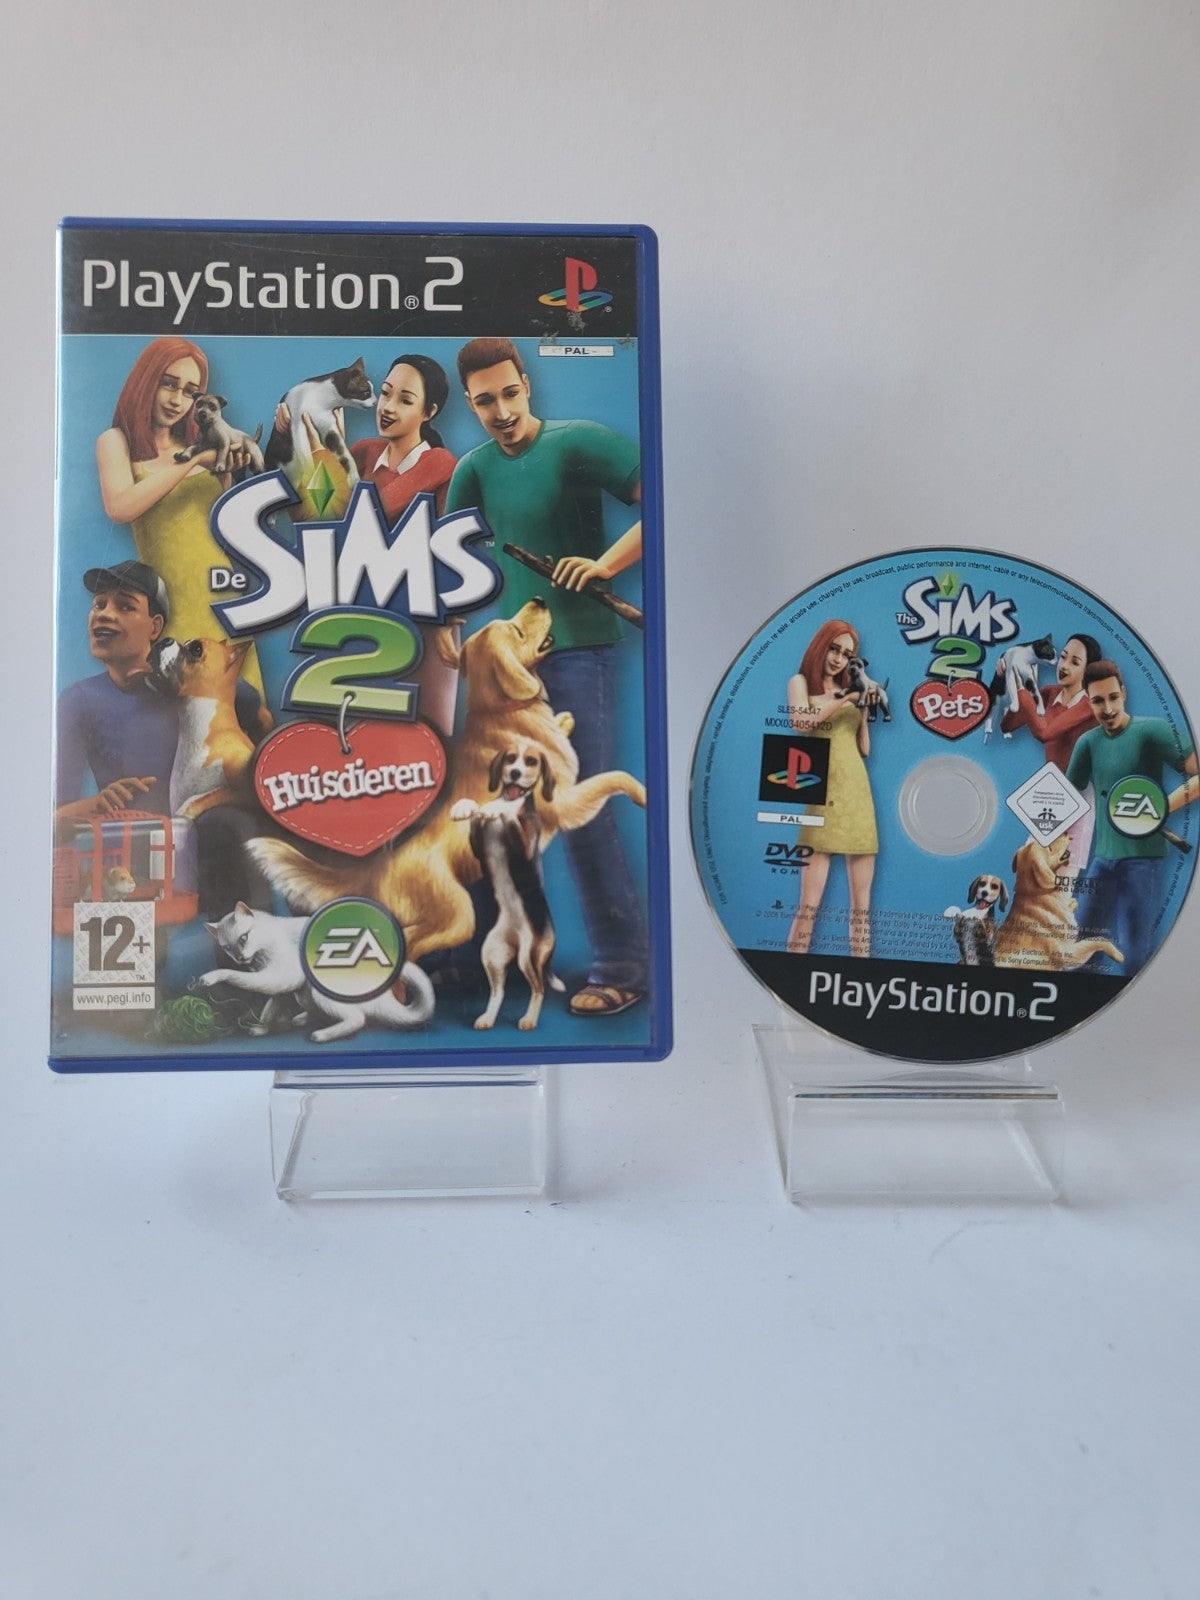 De Sims 2 Huisdieren Playstation 2